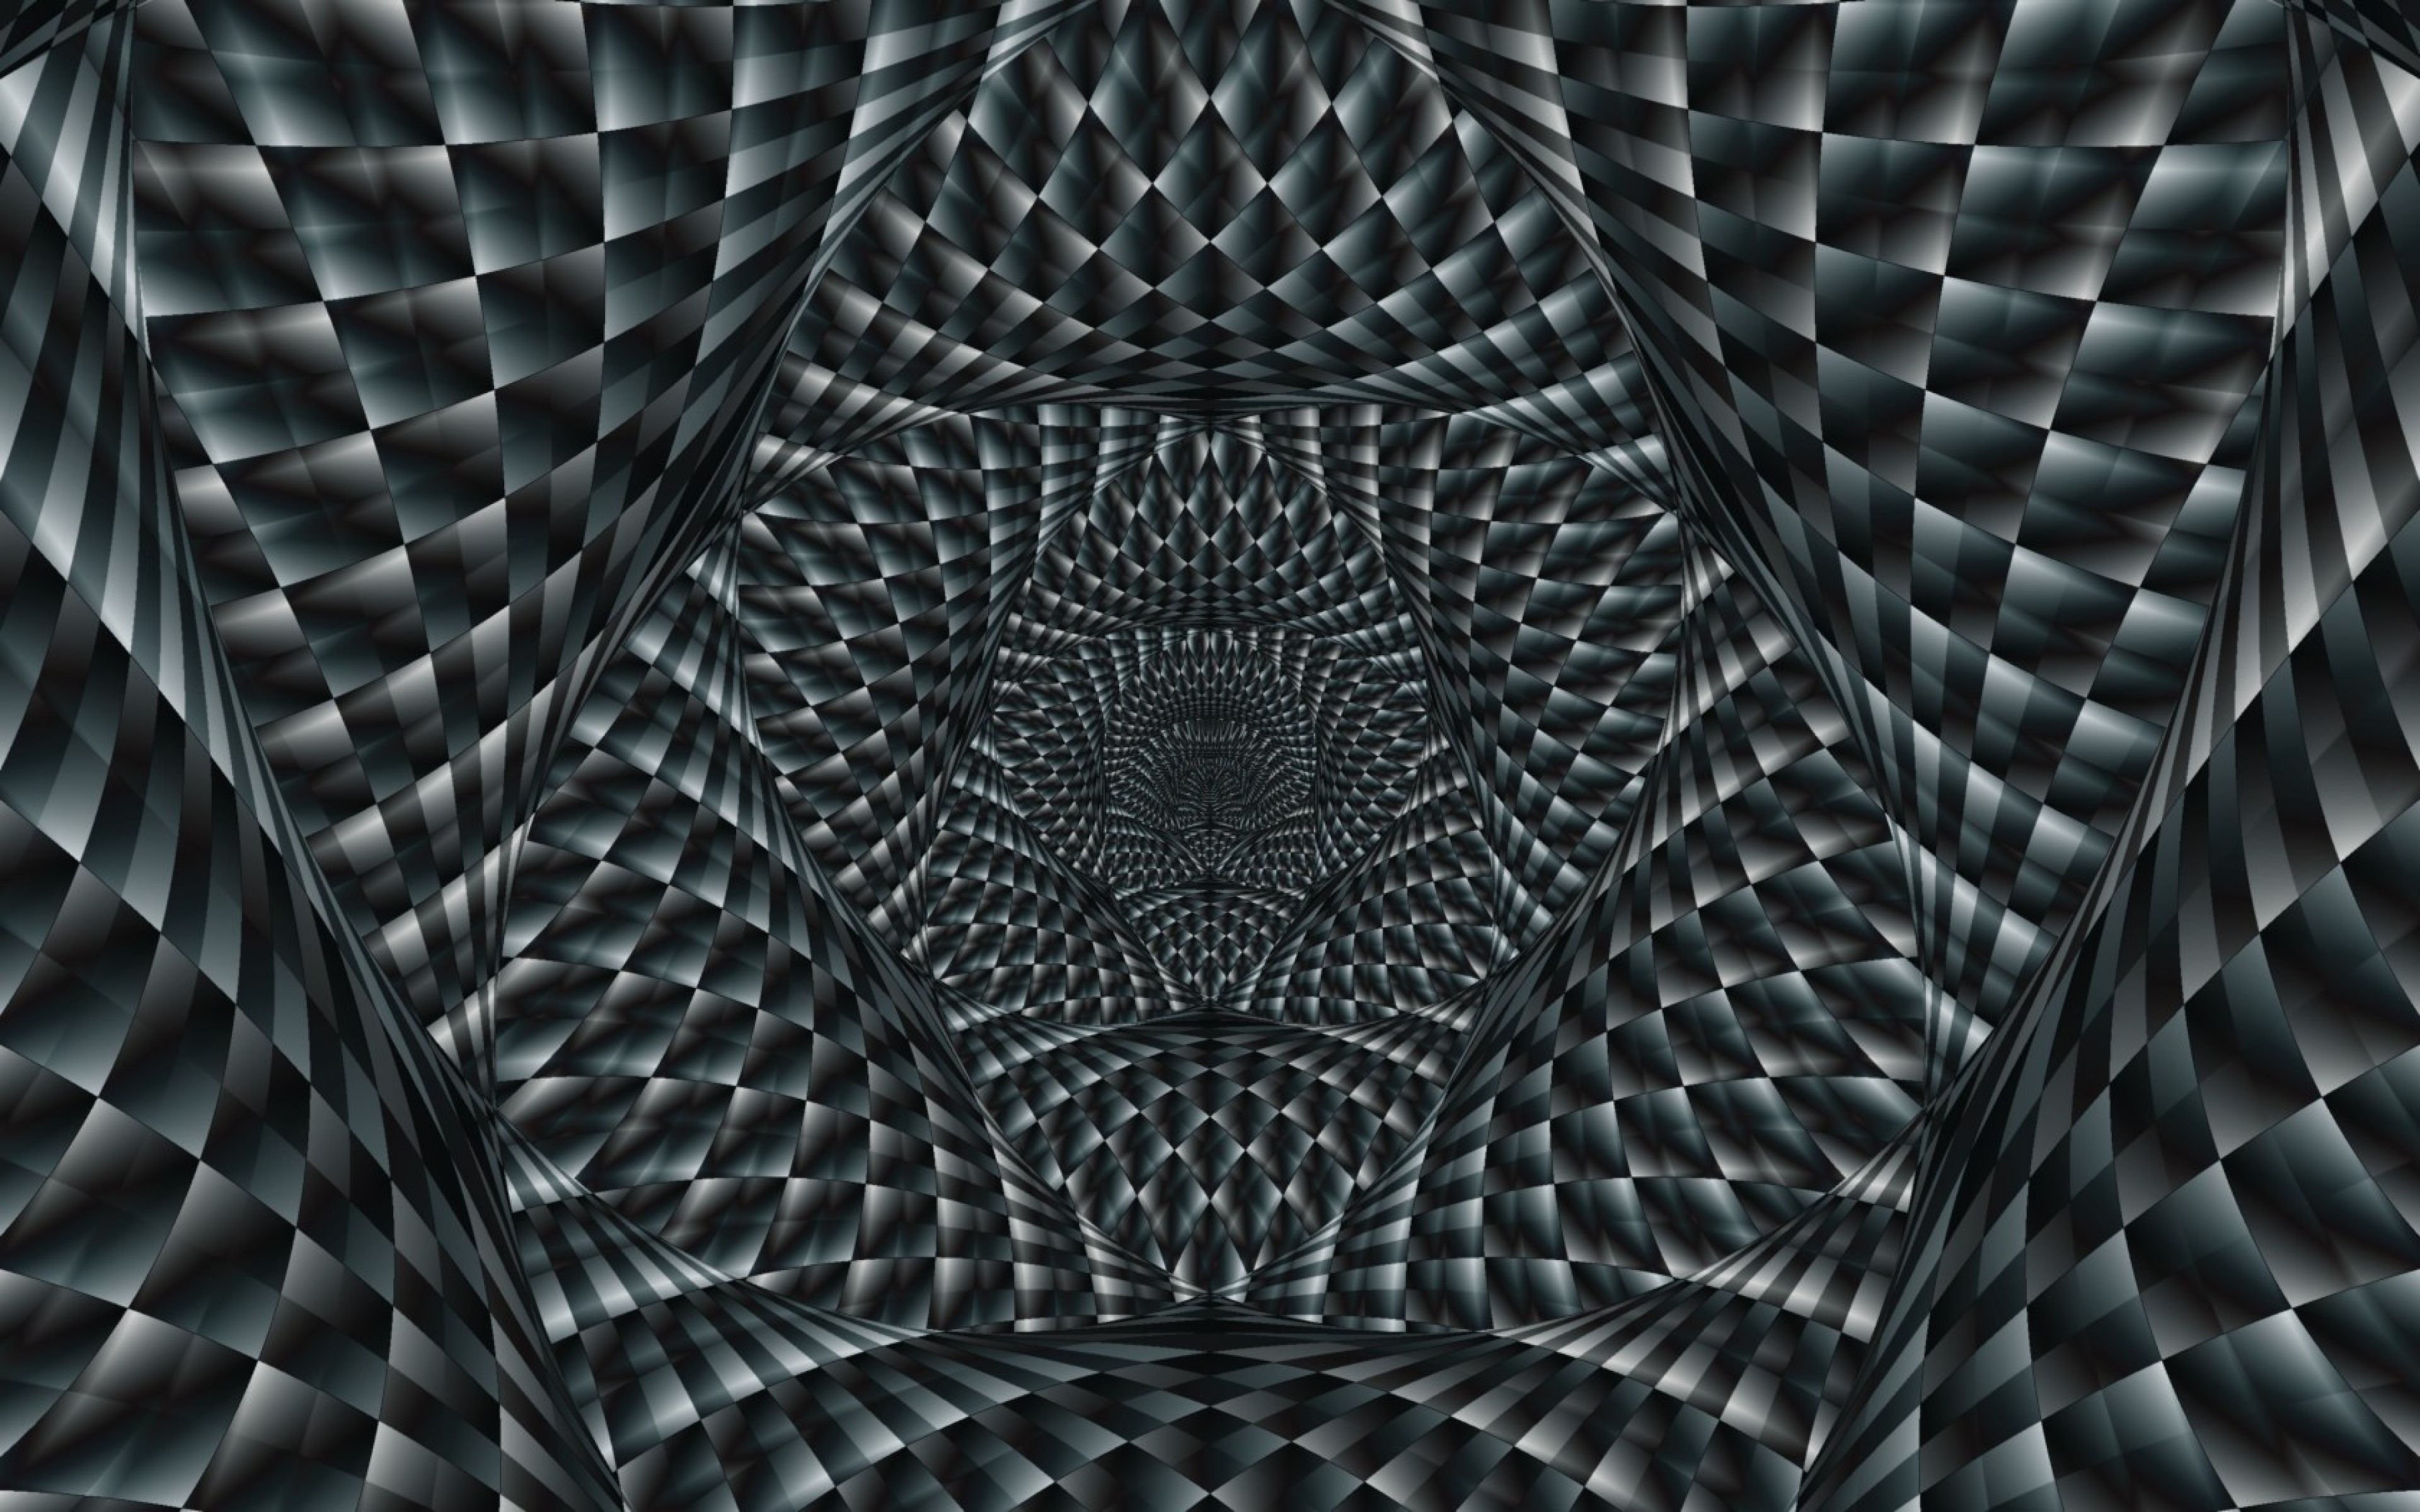 illusione ottica wallpaper hd,modello,monocromatico,simmetria,design,bianco e nero